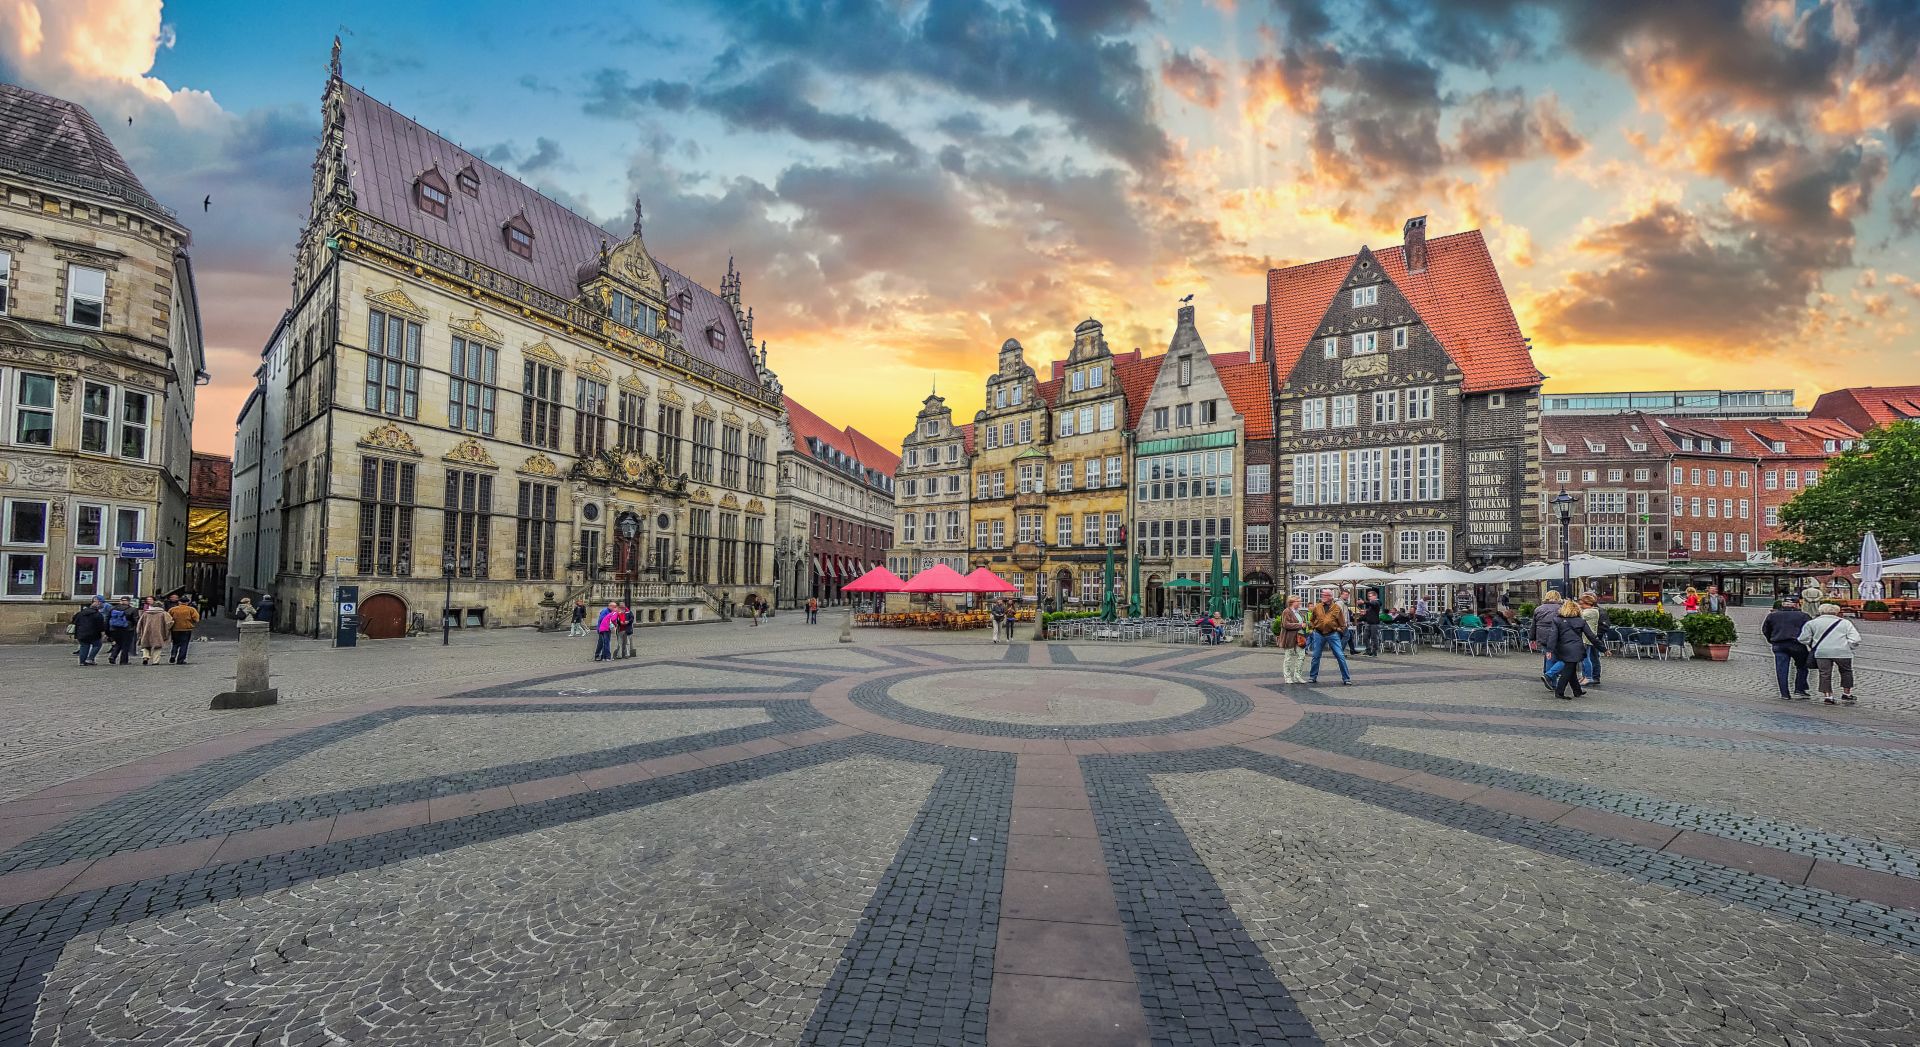 Place du marché historique de Brême au centre de la ville hanséatique